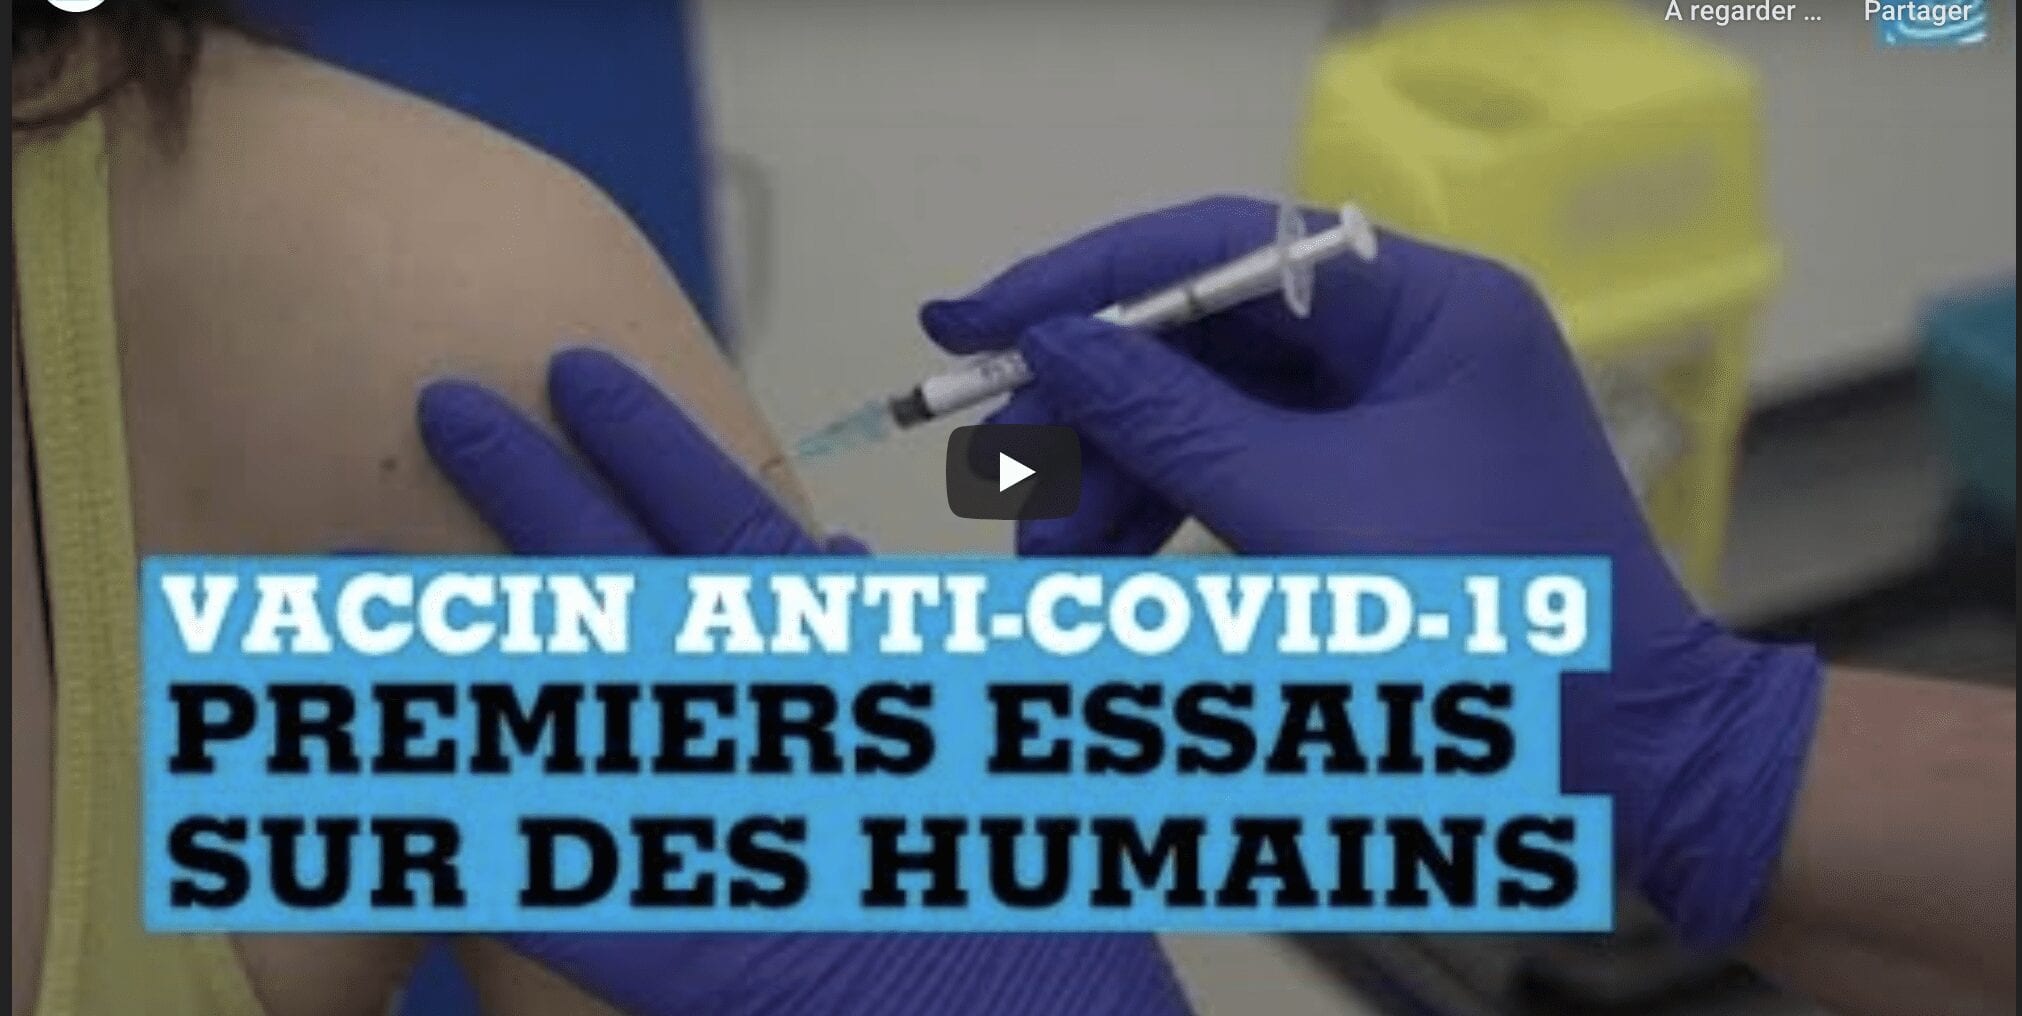 Capture décran 2020 05 03 à 00.39.55 - Vaccin anti Covid-19 : Premiers essais sur l’humain au Royaume Uni